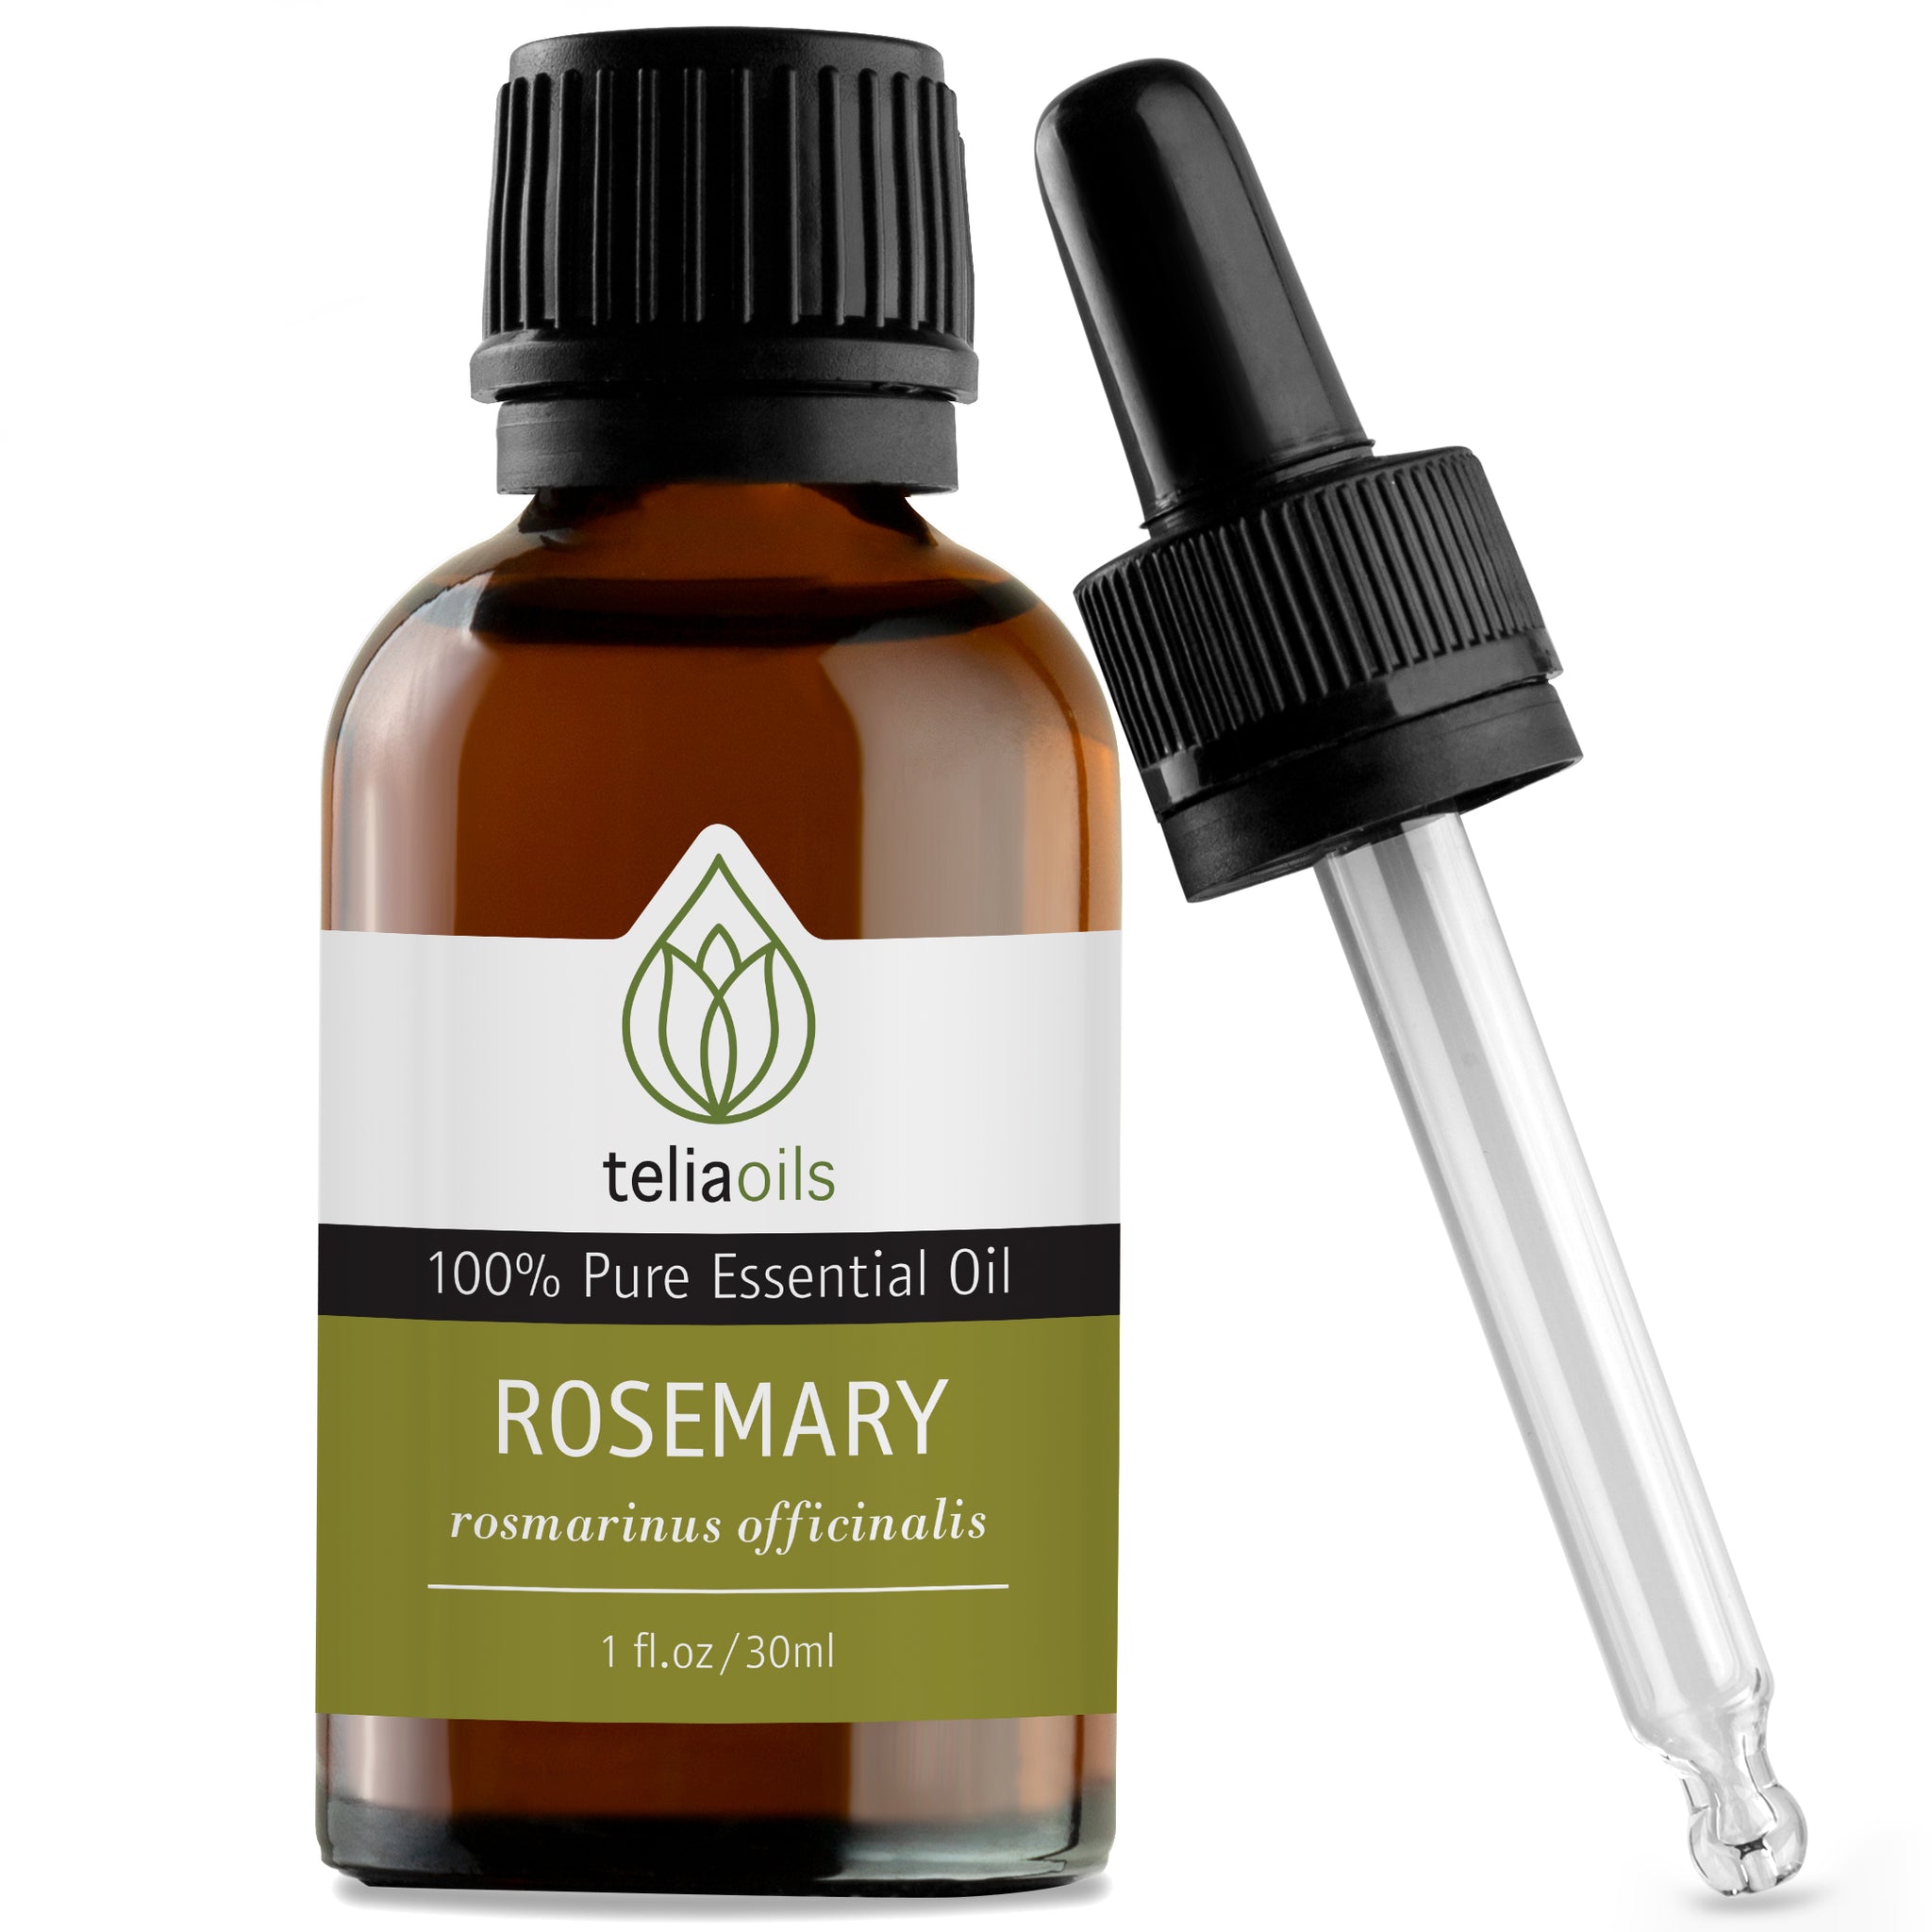 Rosemary Essential Oil (Rosmarinus officinalis)